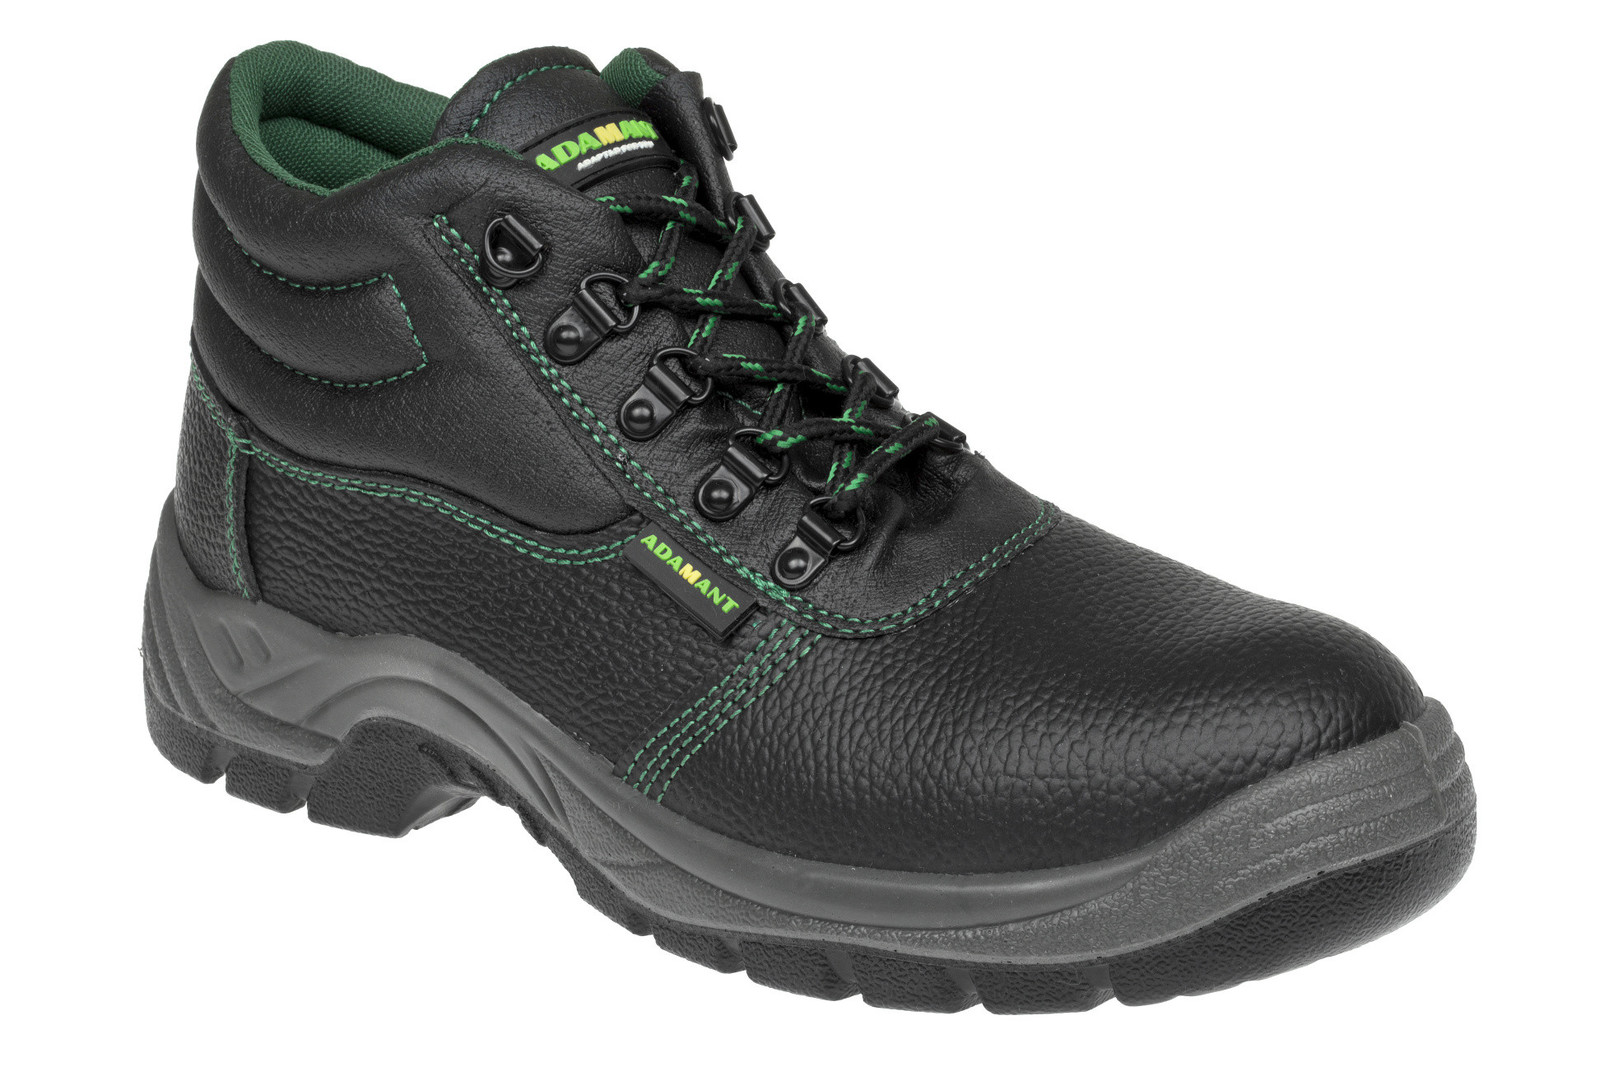 Bezpečnostná obuv Adamant Classic S1P - veľkosť: 44, farba: čierna